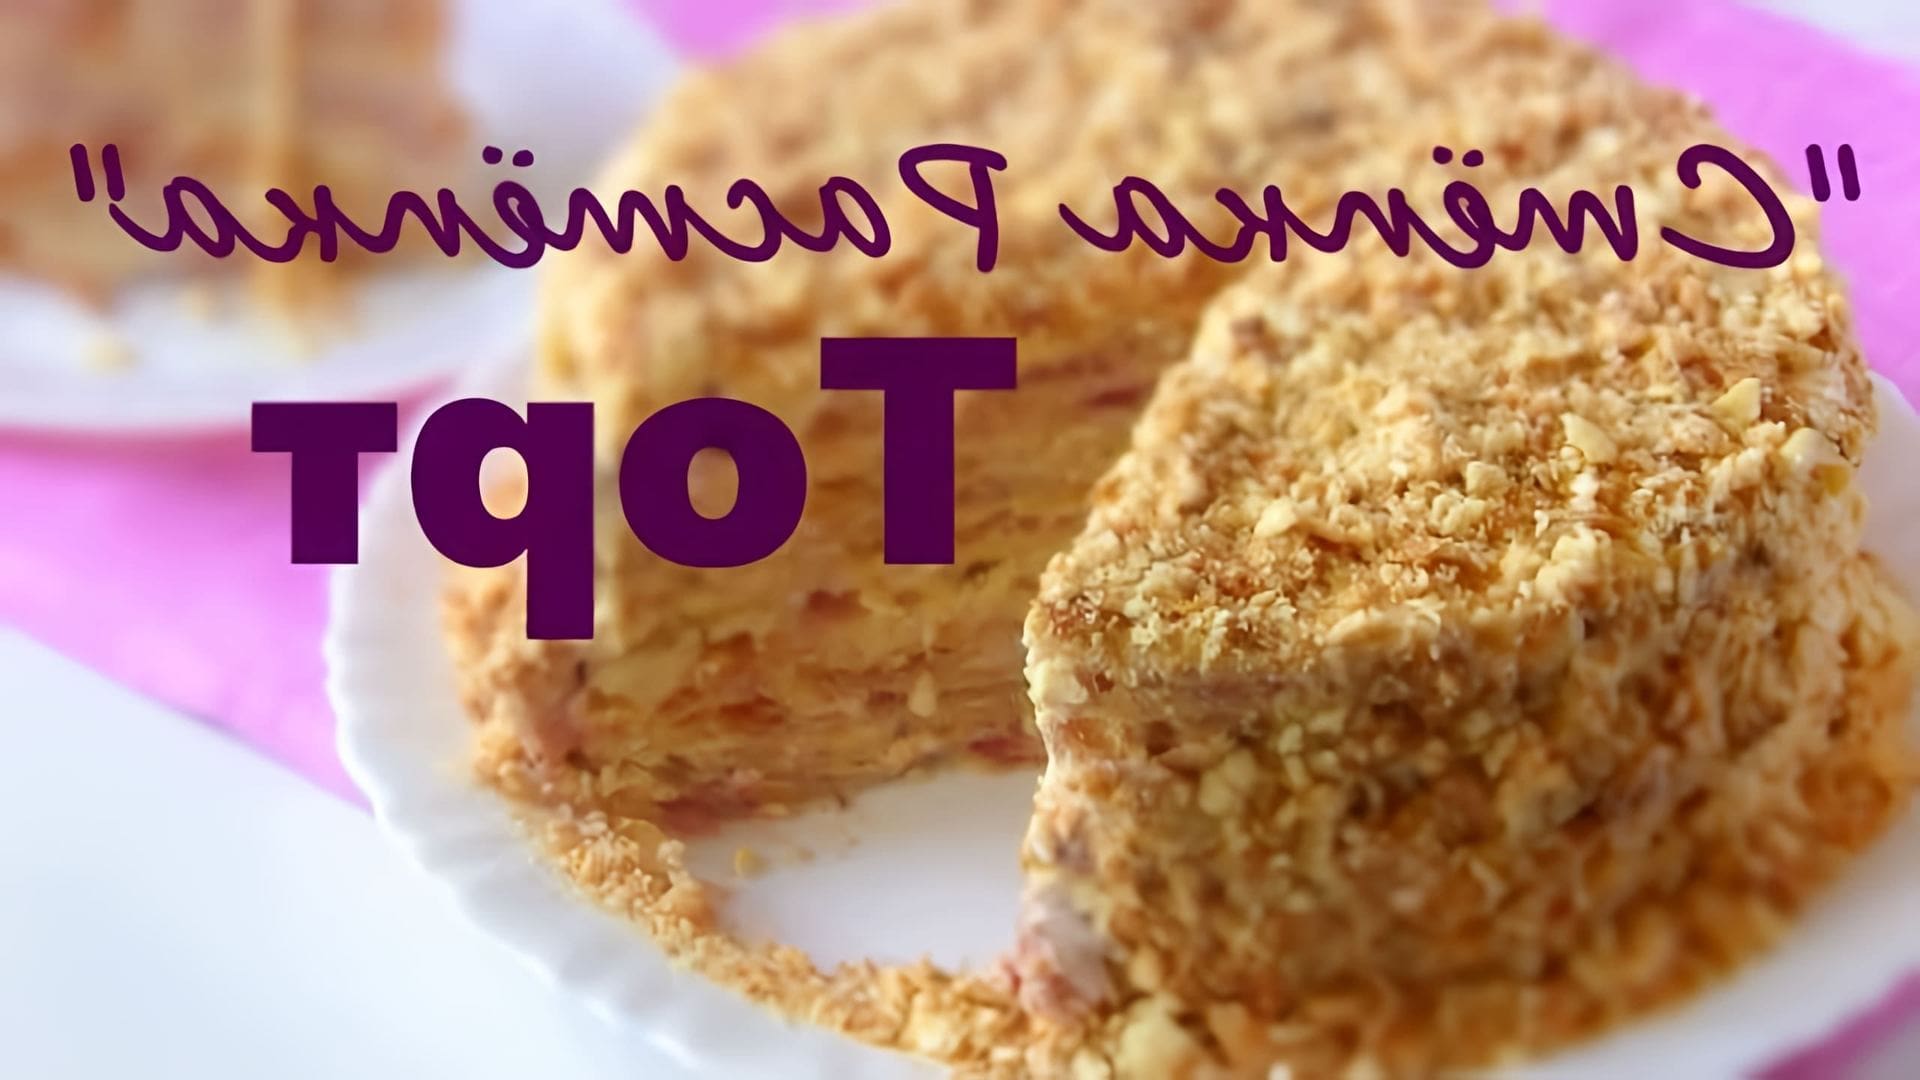 В этом видео демонстрируется простой и недорогой рецепт торта "Стёпка - Растрёпка"